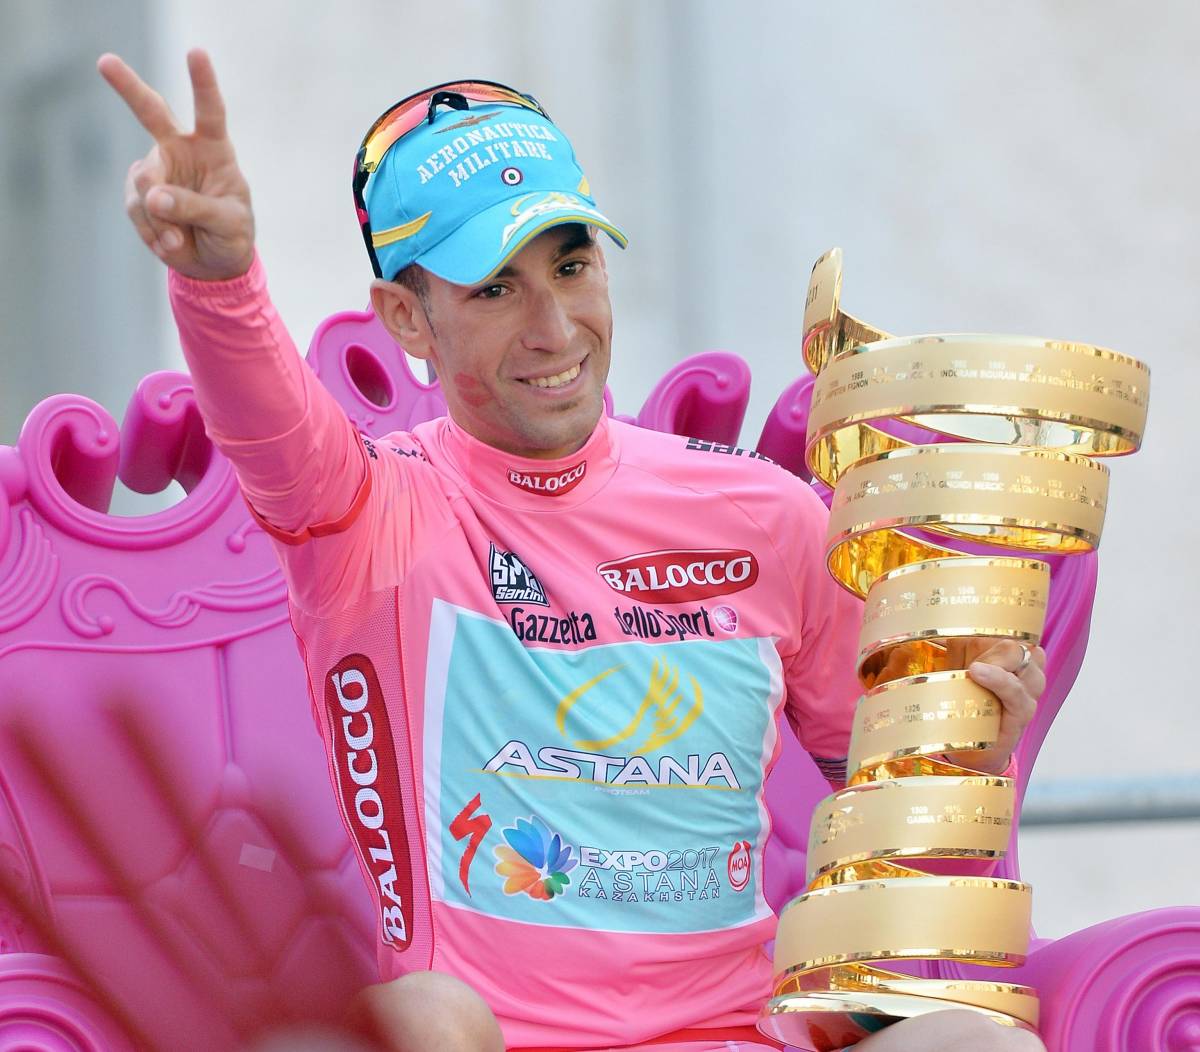 Giro d'Italia 2023, come sarà secondo il campione Nibali